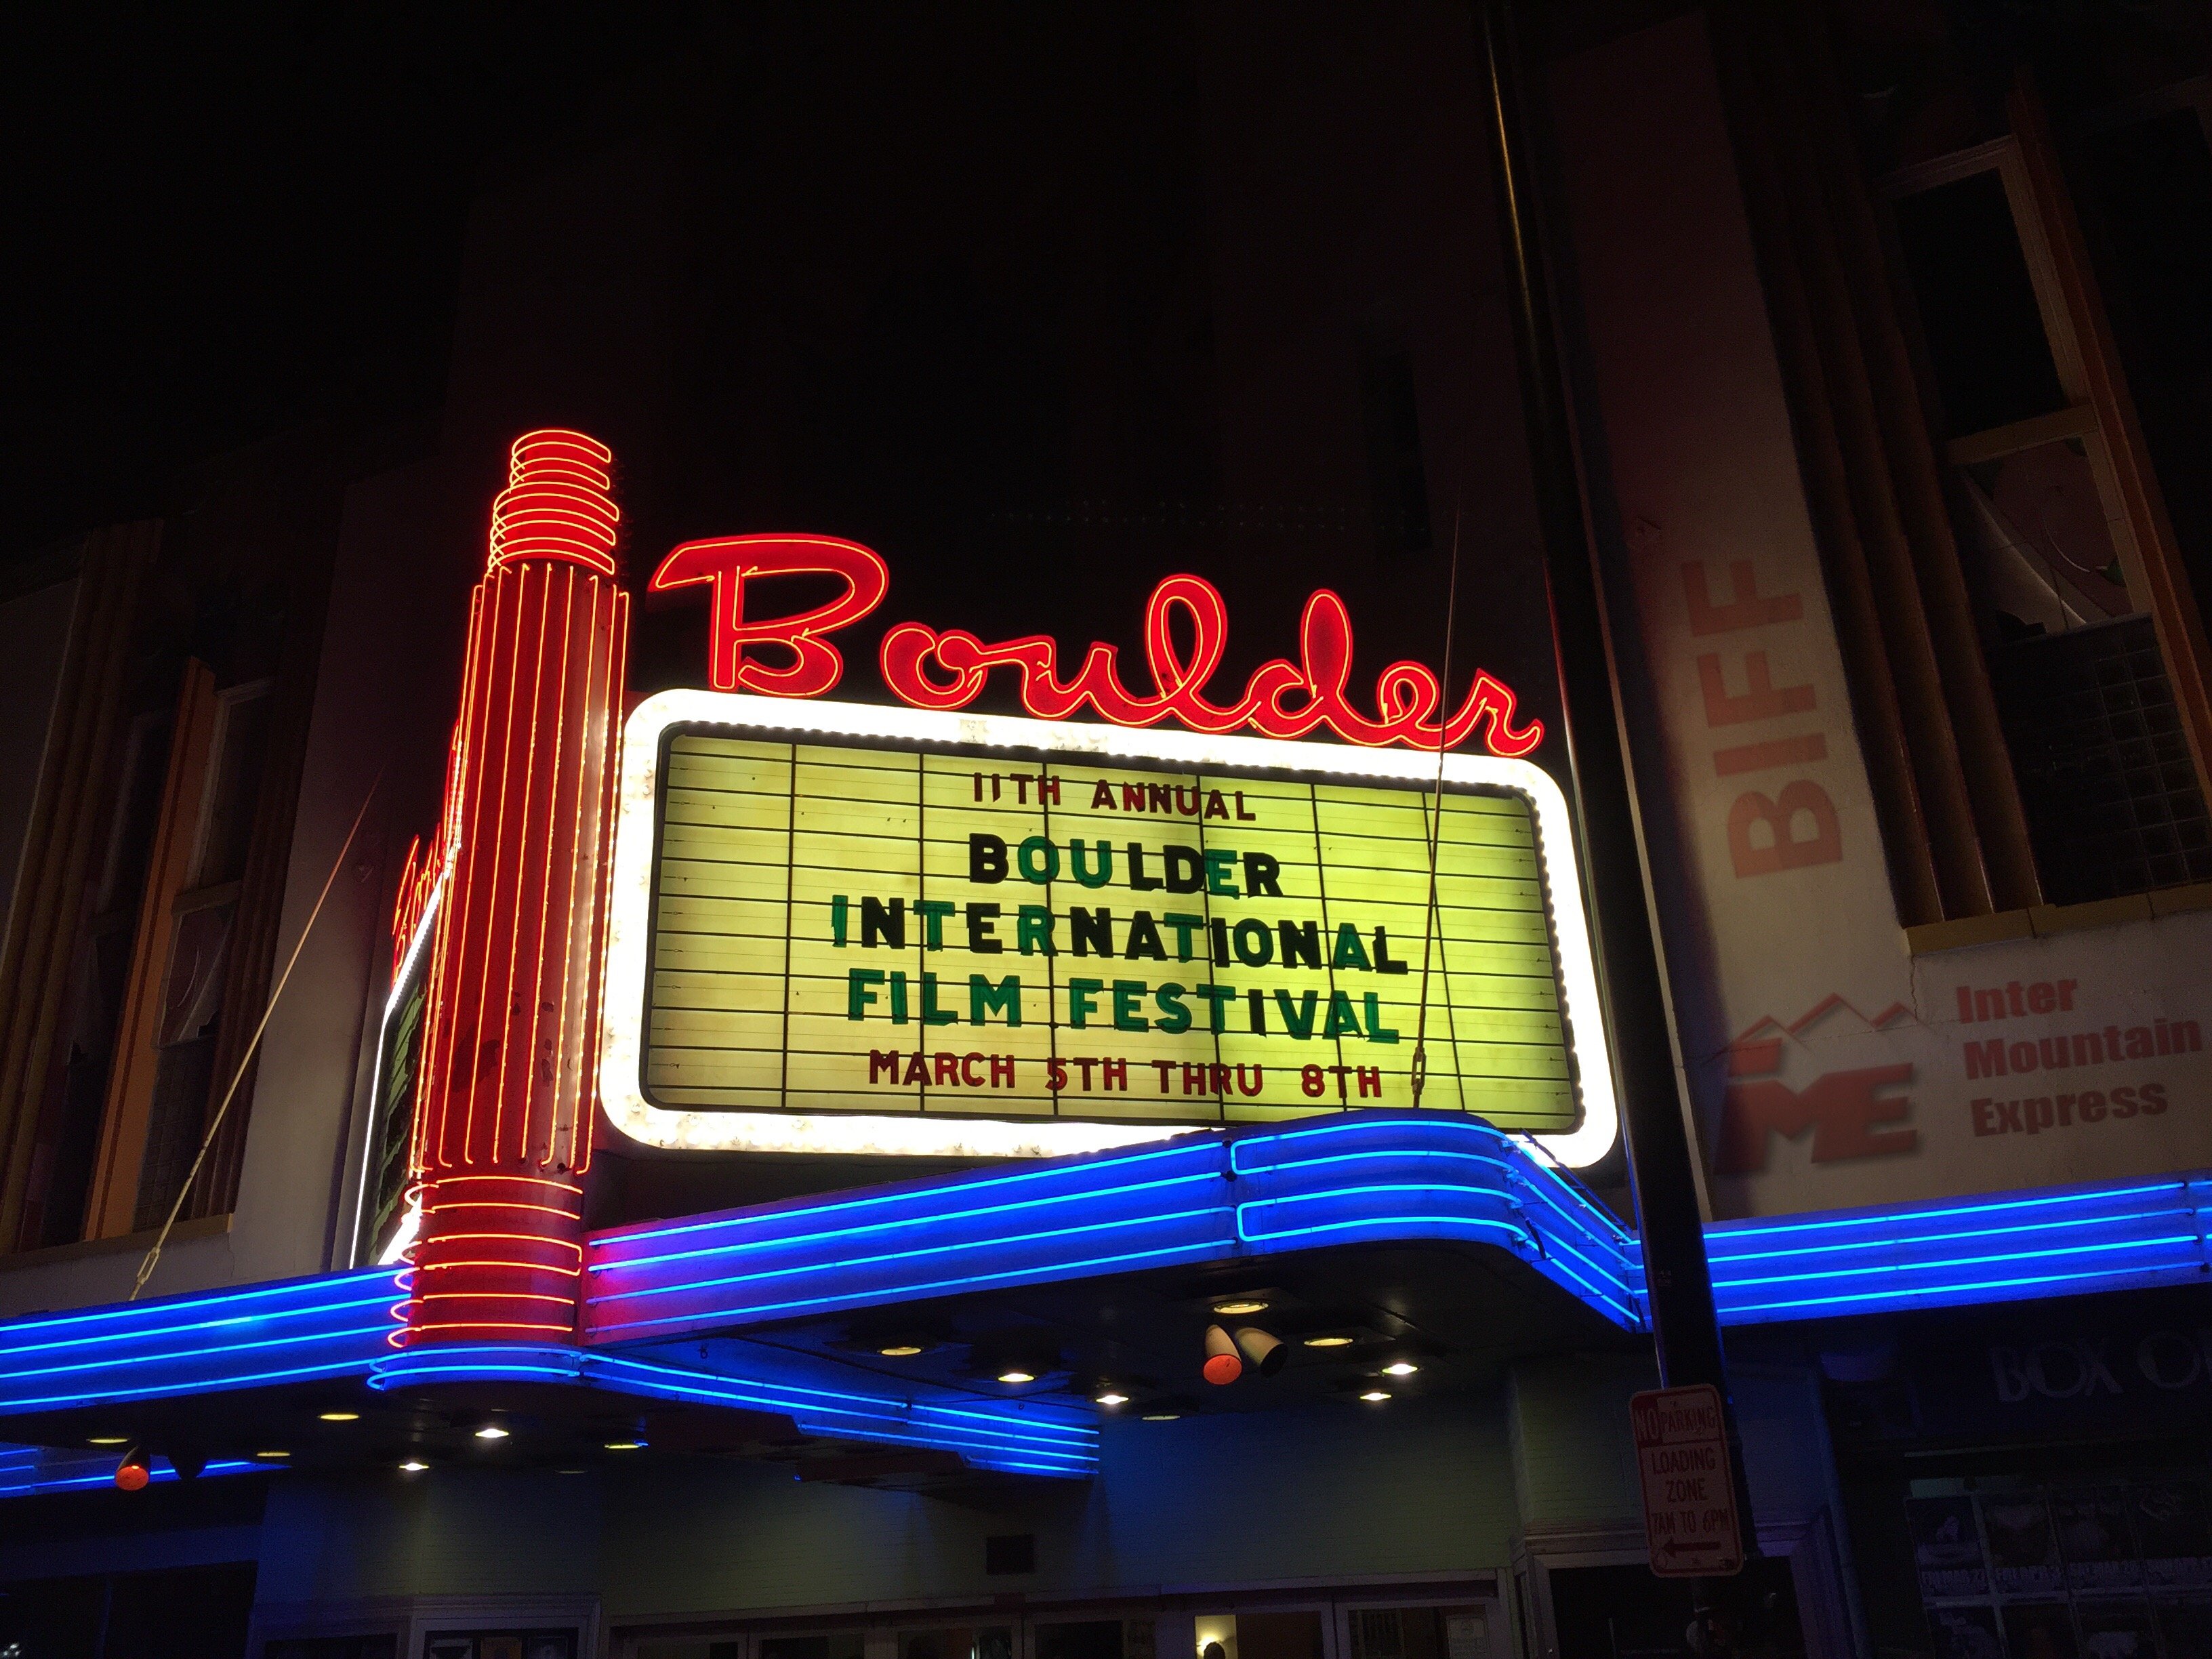 Mar 2 Mar 5, 2017 The 13th annual Boulder International Film Festival